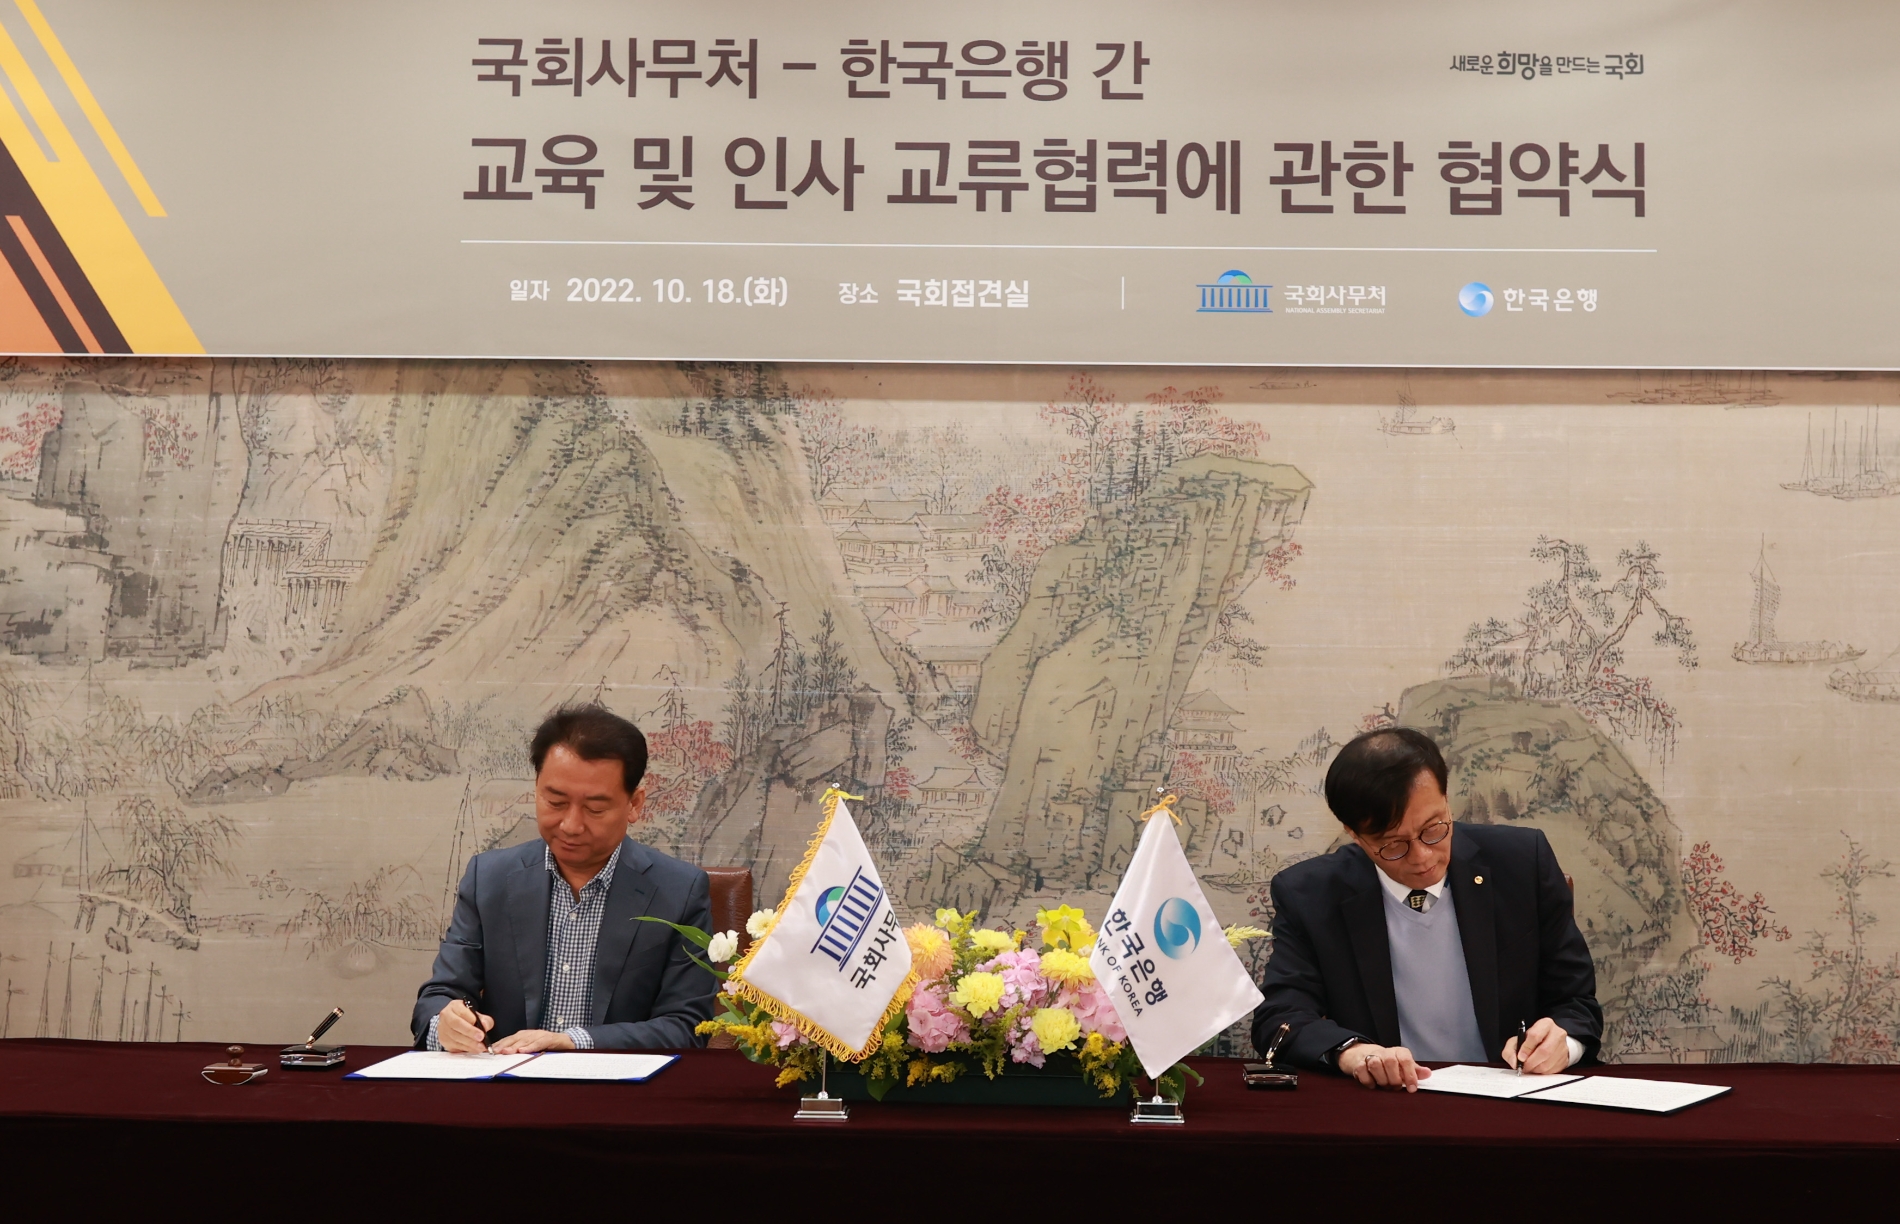 한국은행(총재 이창용)은 18일 국회에서 국회사무처(사무총장 이광재)와 경제교육 및 인사 교류협력을 위한 업무협약(MOU)을 체결했다. / 사진제공= 한국은행(2022.10.18)